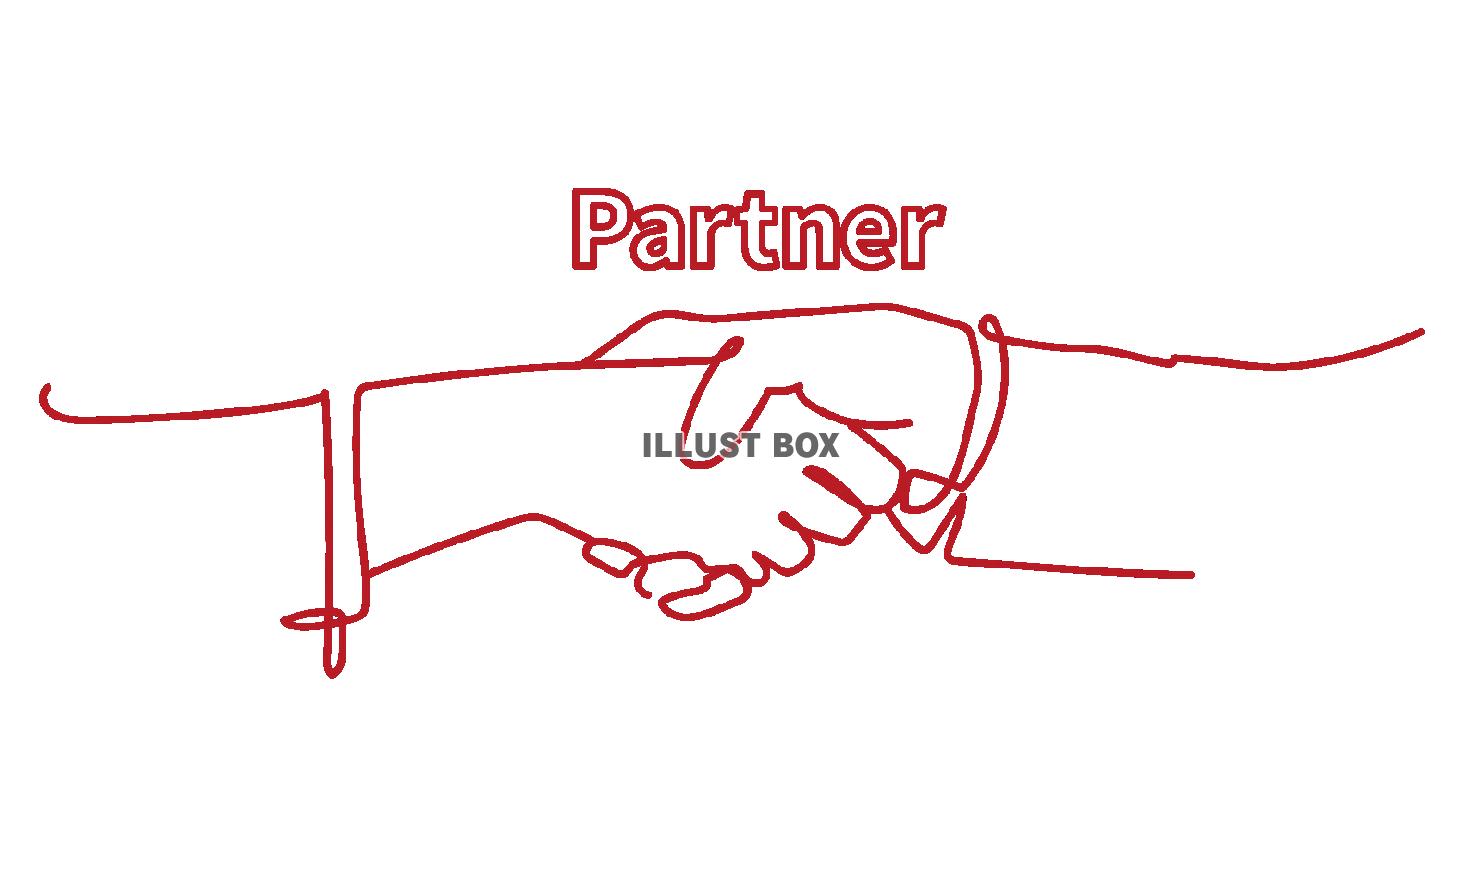 握手をするビジネスパーソンの手元の線画